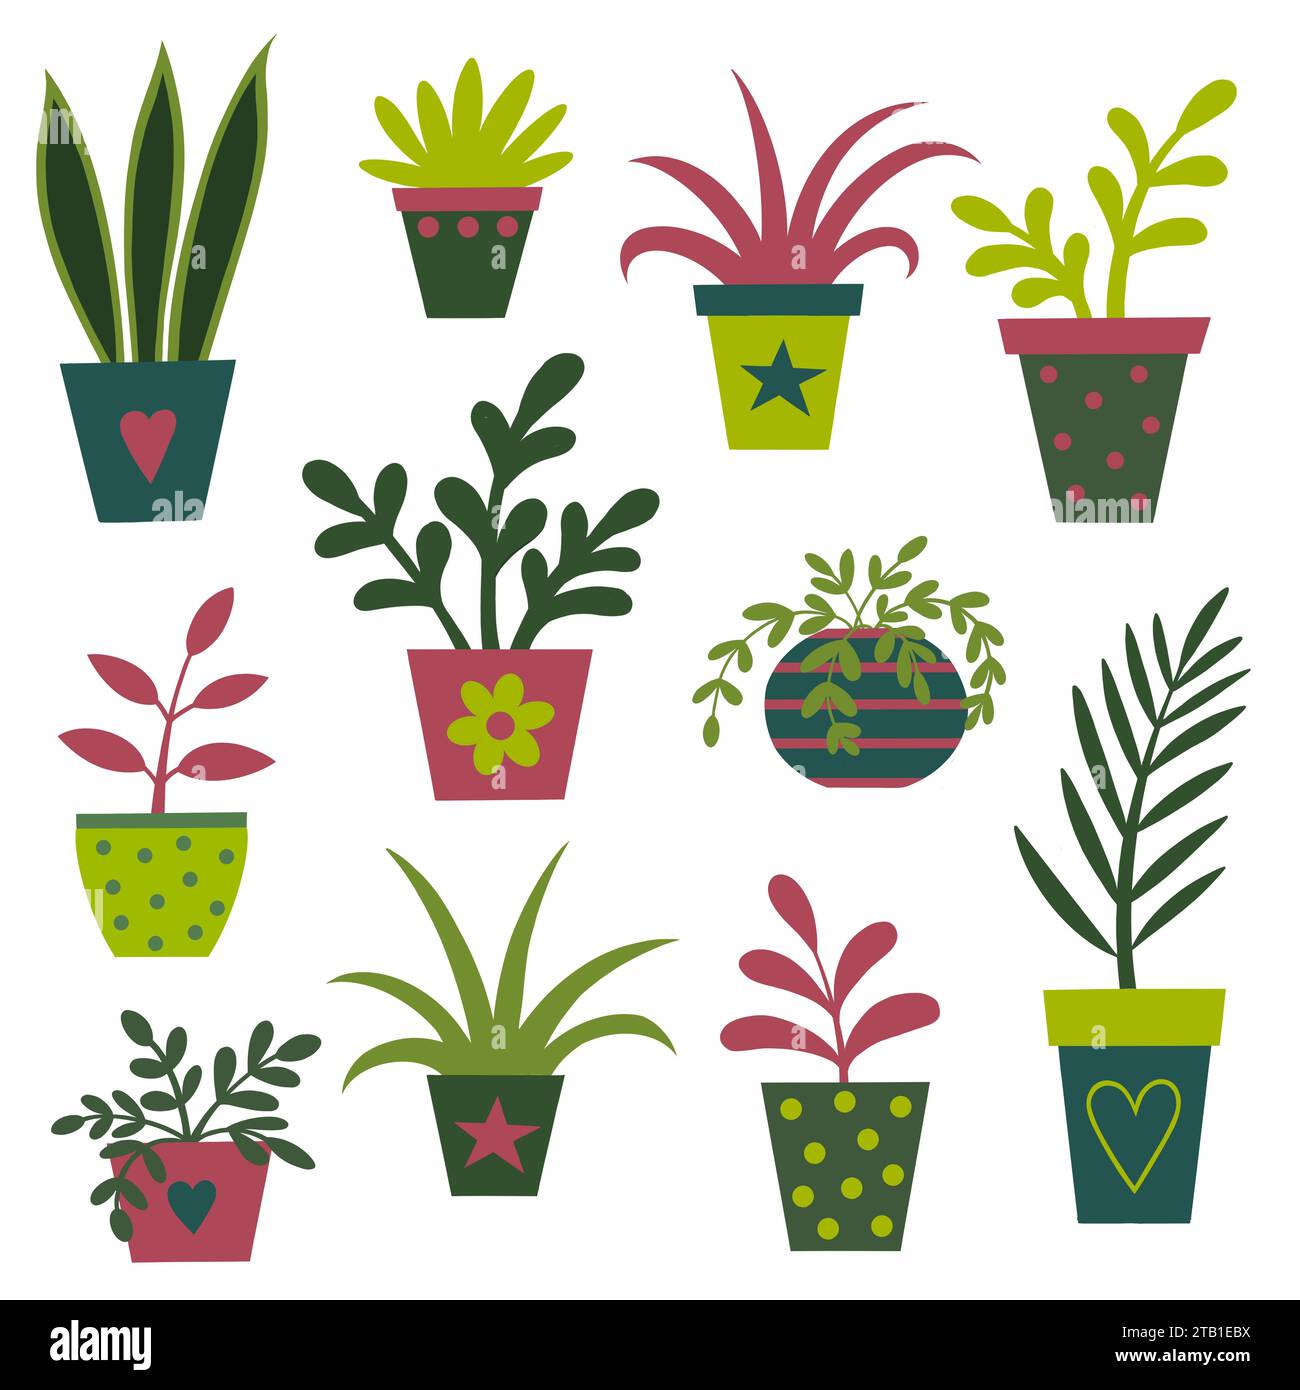 Auswahl an Hauspflanzen in dekorativen Pflanztöpfen. Verschiedene Blätter und Farben. Schlauchpflanzen in hübschen Töpfen. Modernes Design im Cartoon-Stil. Stockfoto